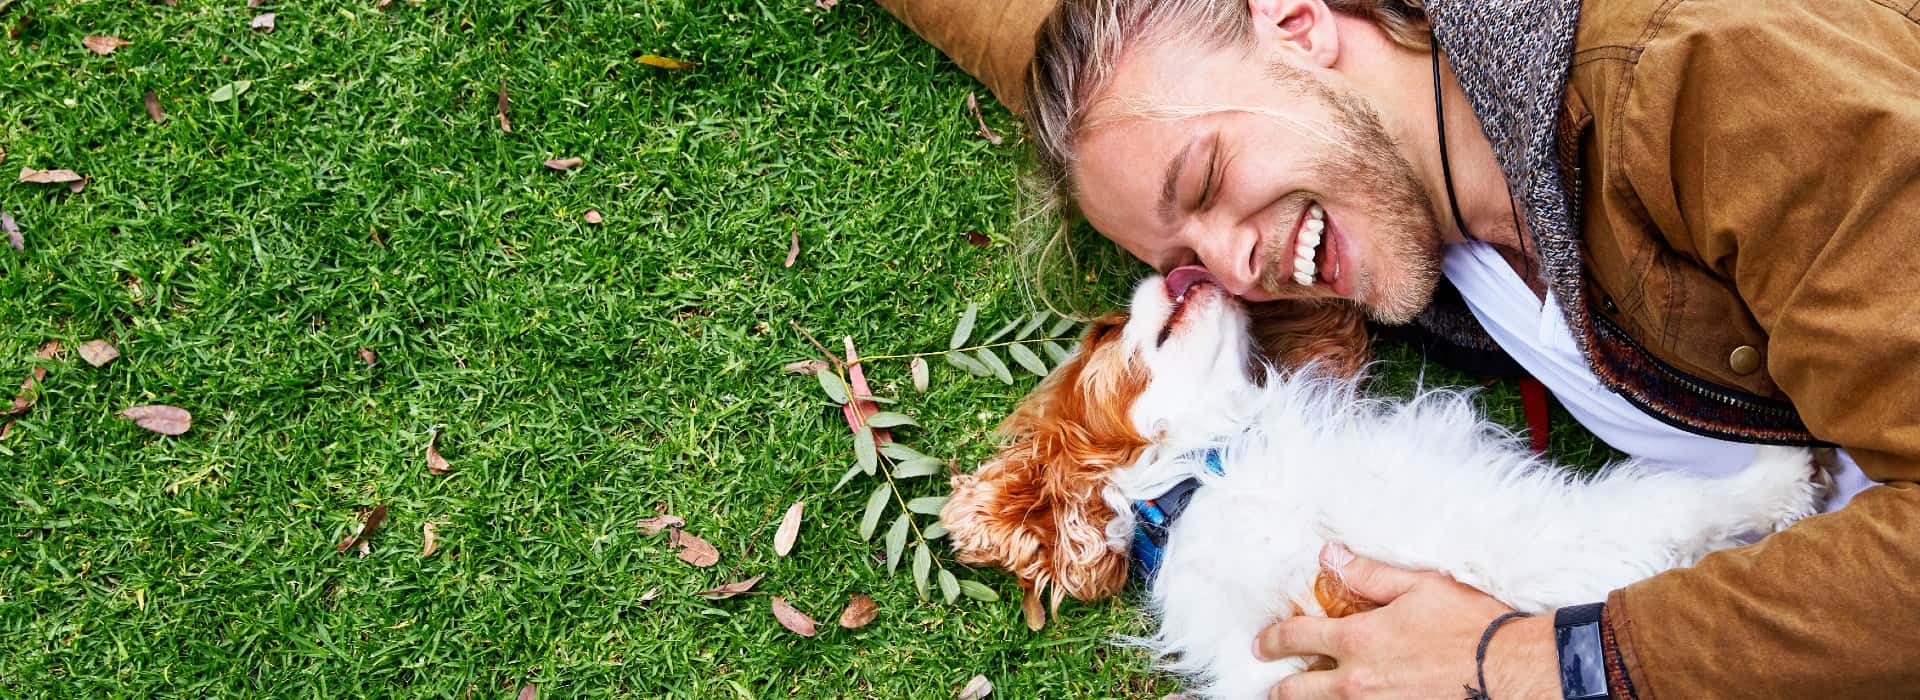 一个男人躺在草地上，带着一只棕色和白色相间的小狗. 狗在舔男人的脸，男人在笑.